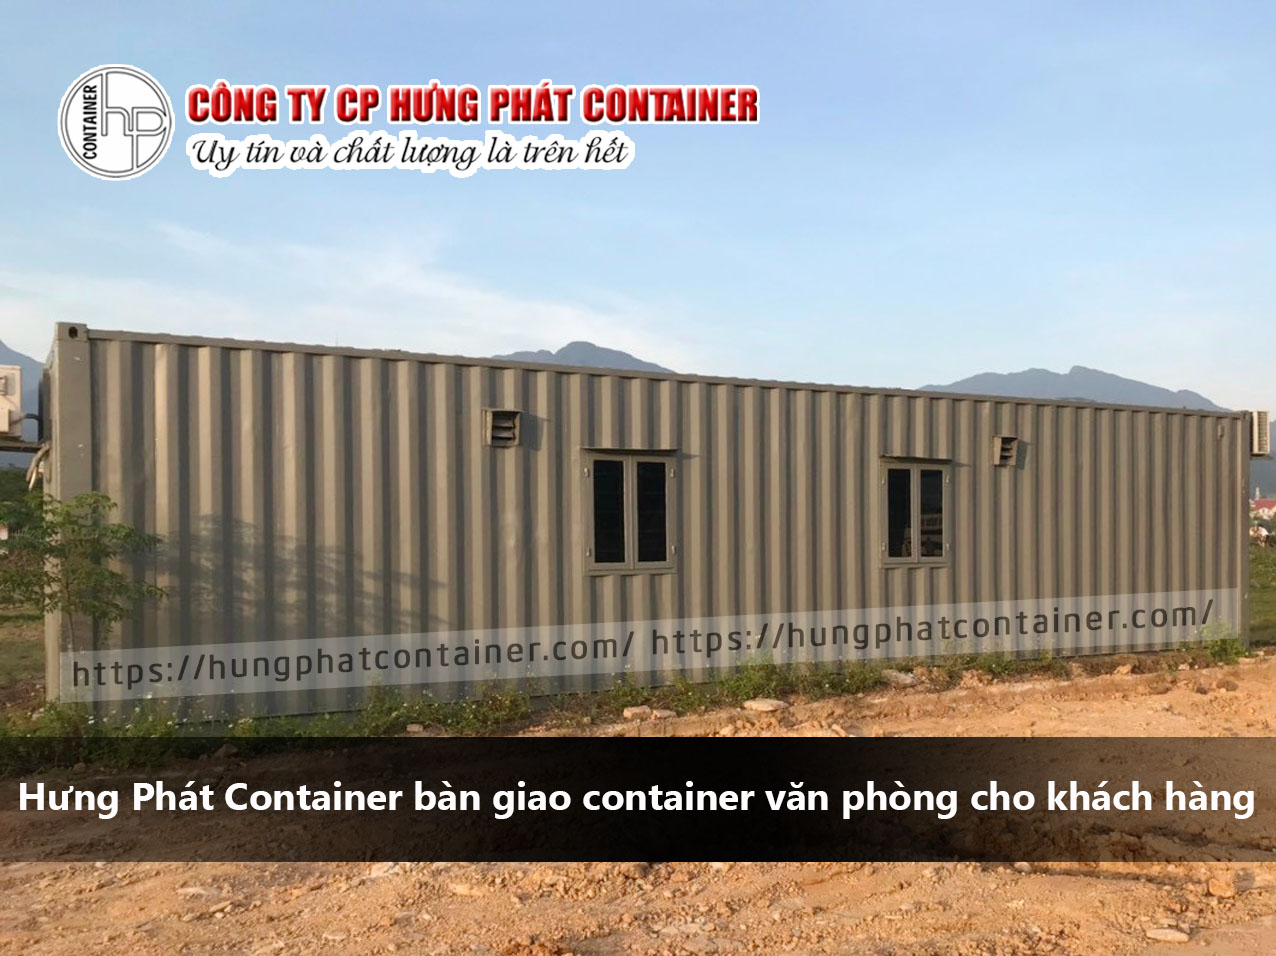 Hưng Phát Container bàn giao container văn phòng cho khách hàng